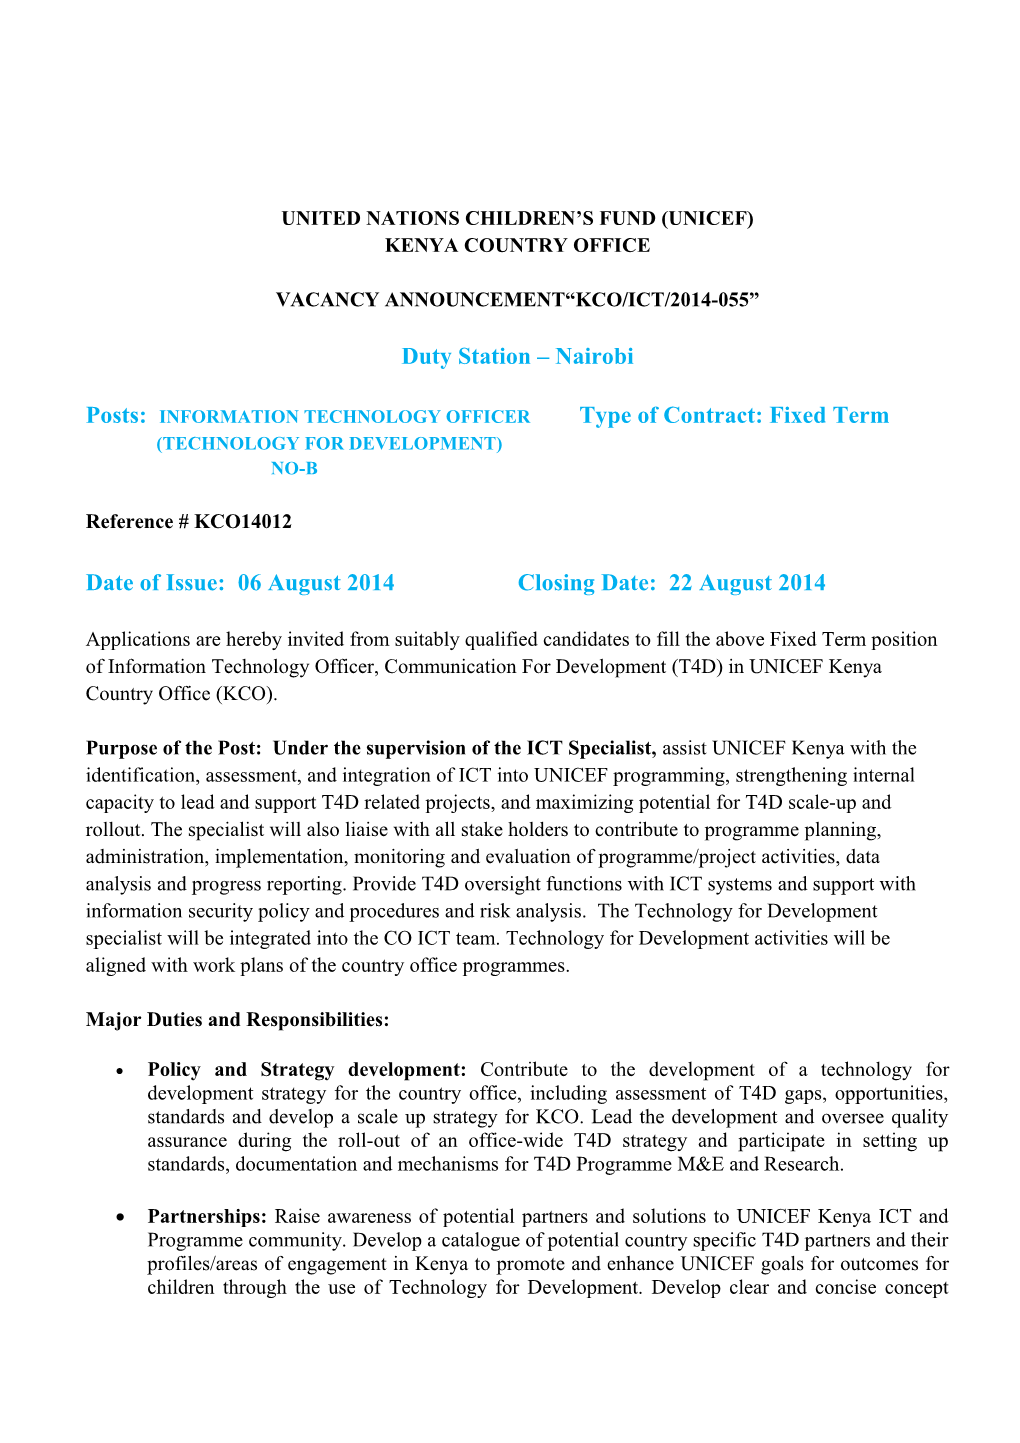 Vacancy Announcement Kco/Ict/2014-055